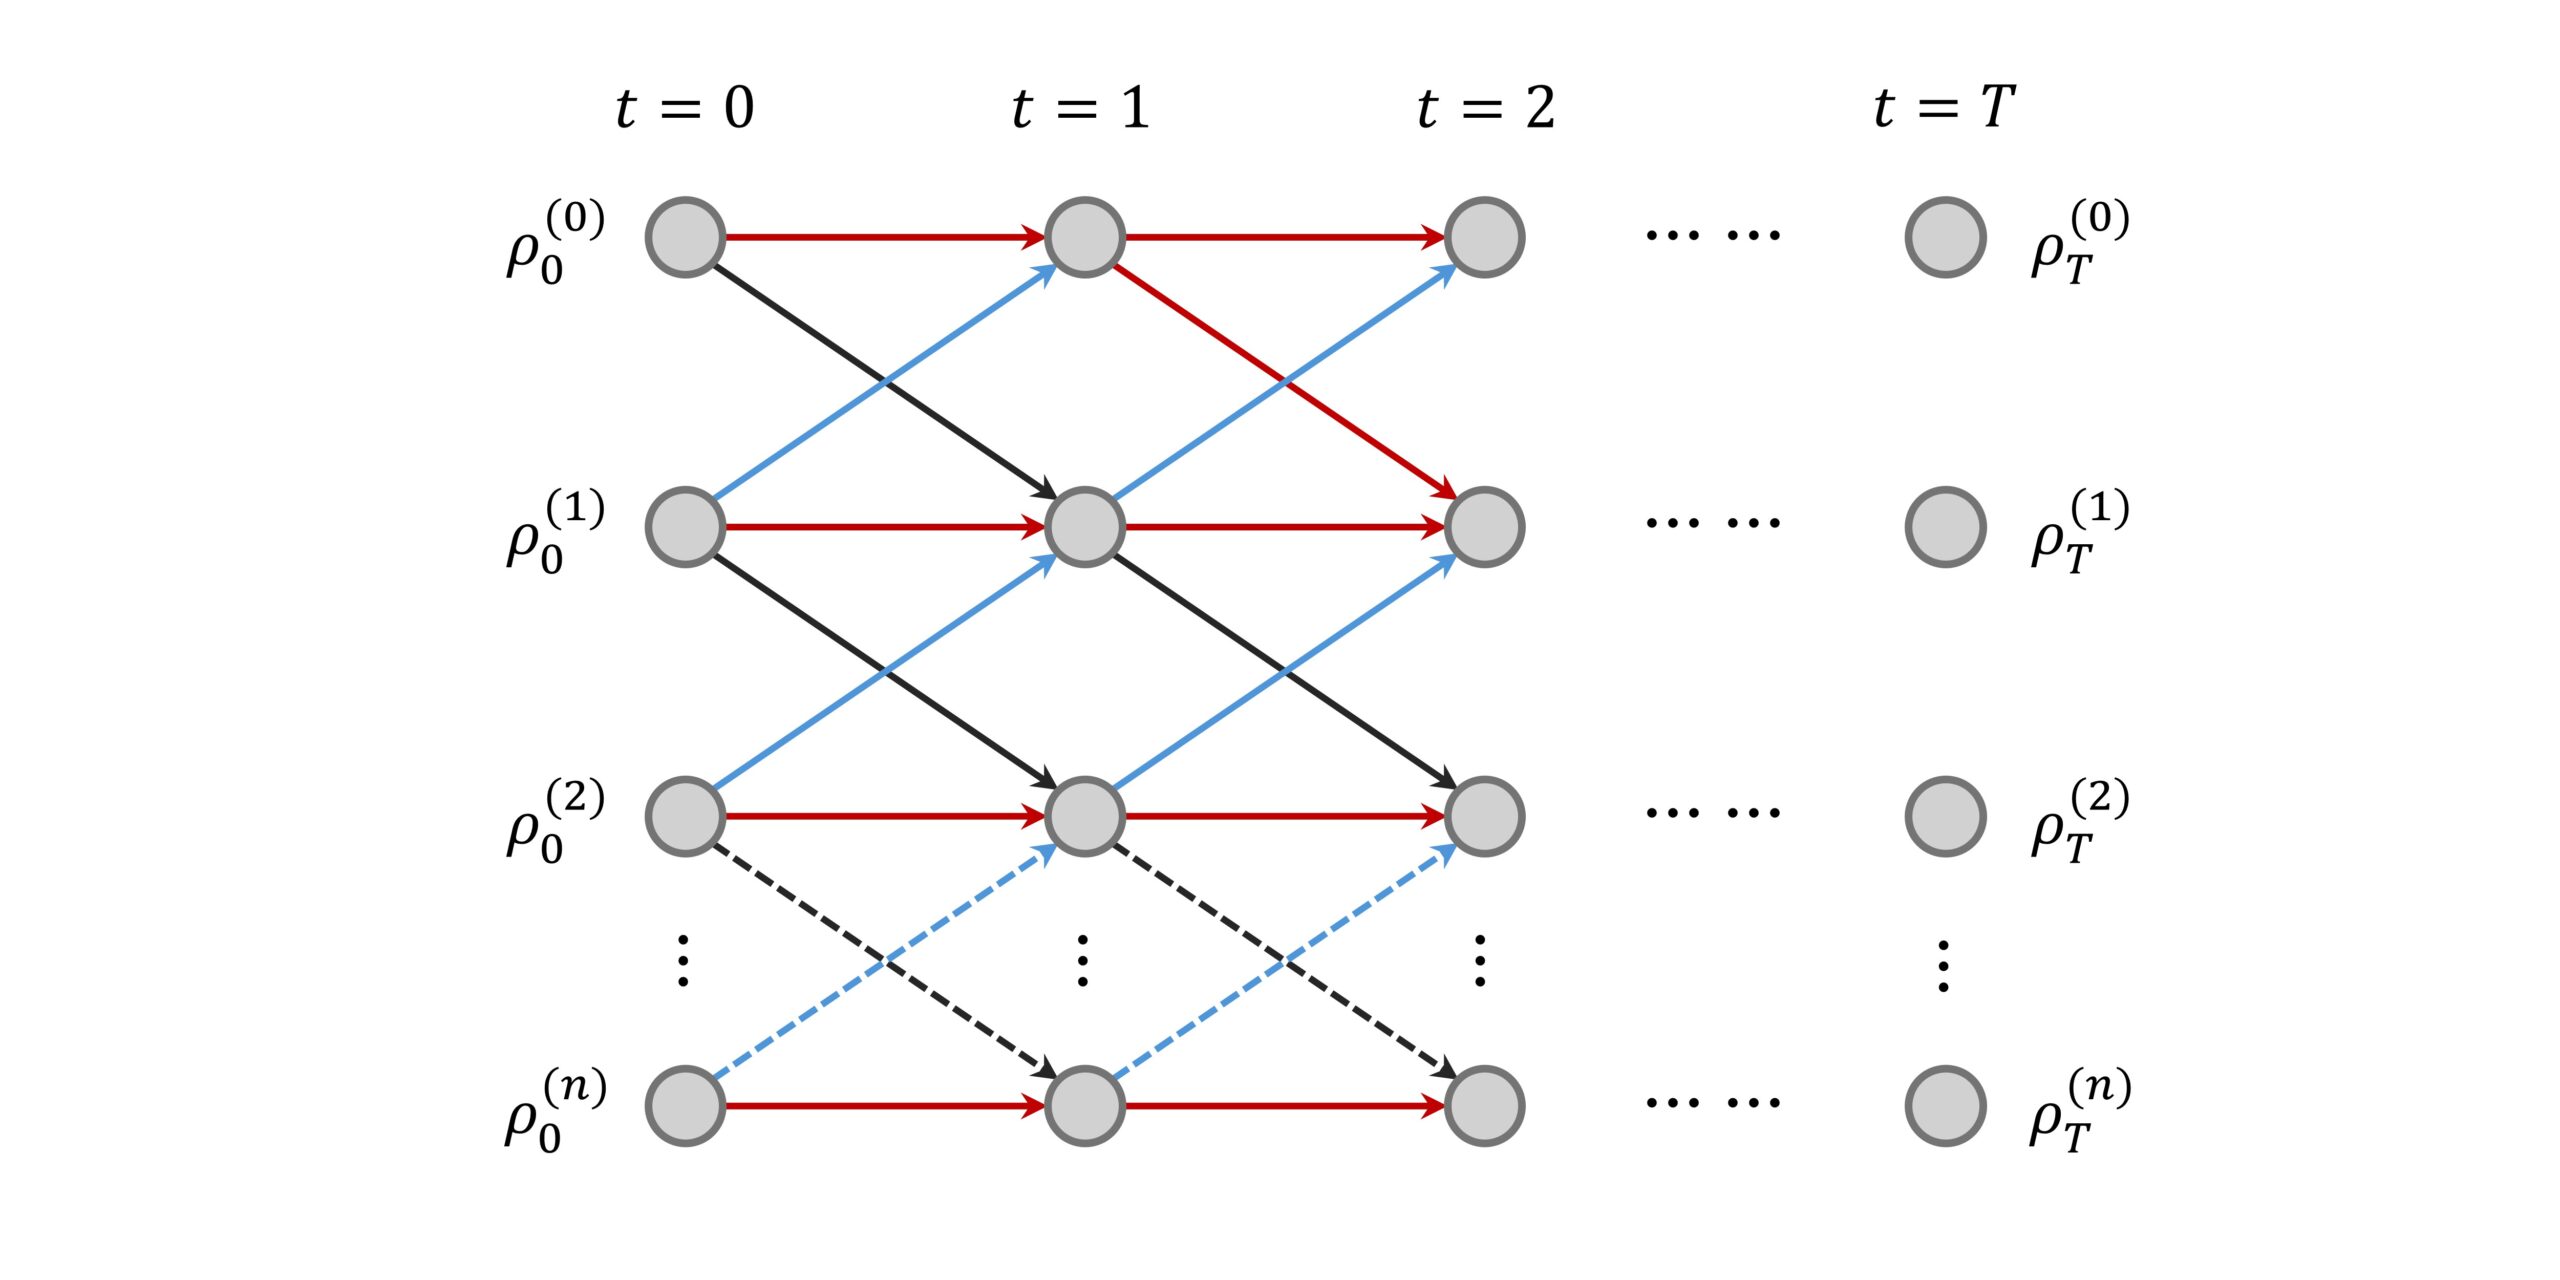 Un nuevo algoritmo de aprendizaje automático cuántico: modelo cuántico oculto dividido de Markov inspirado en la ecuación maestra condicional cuántica